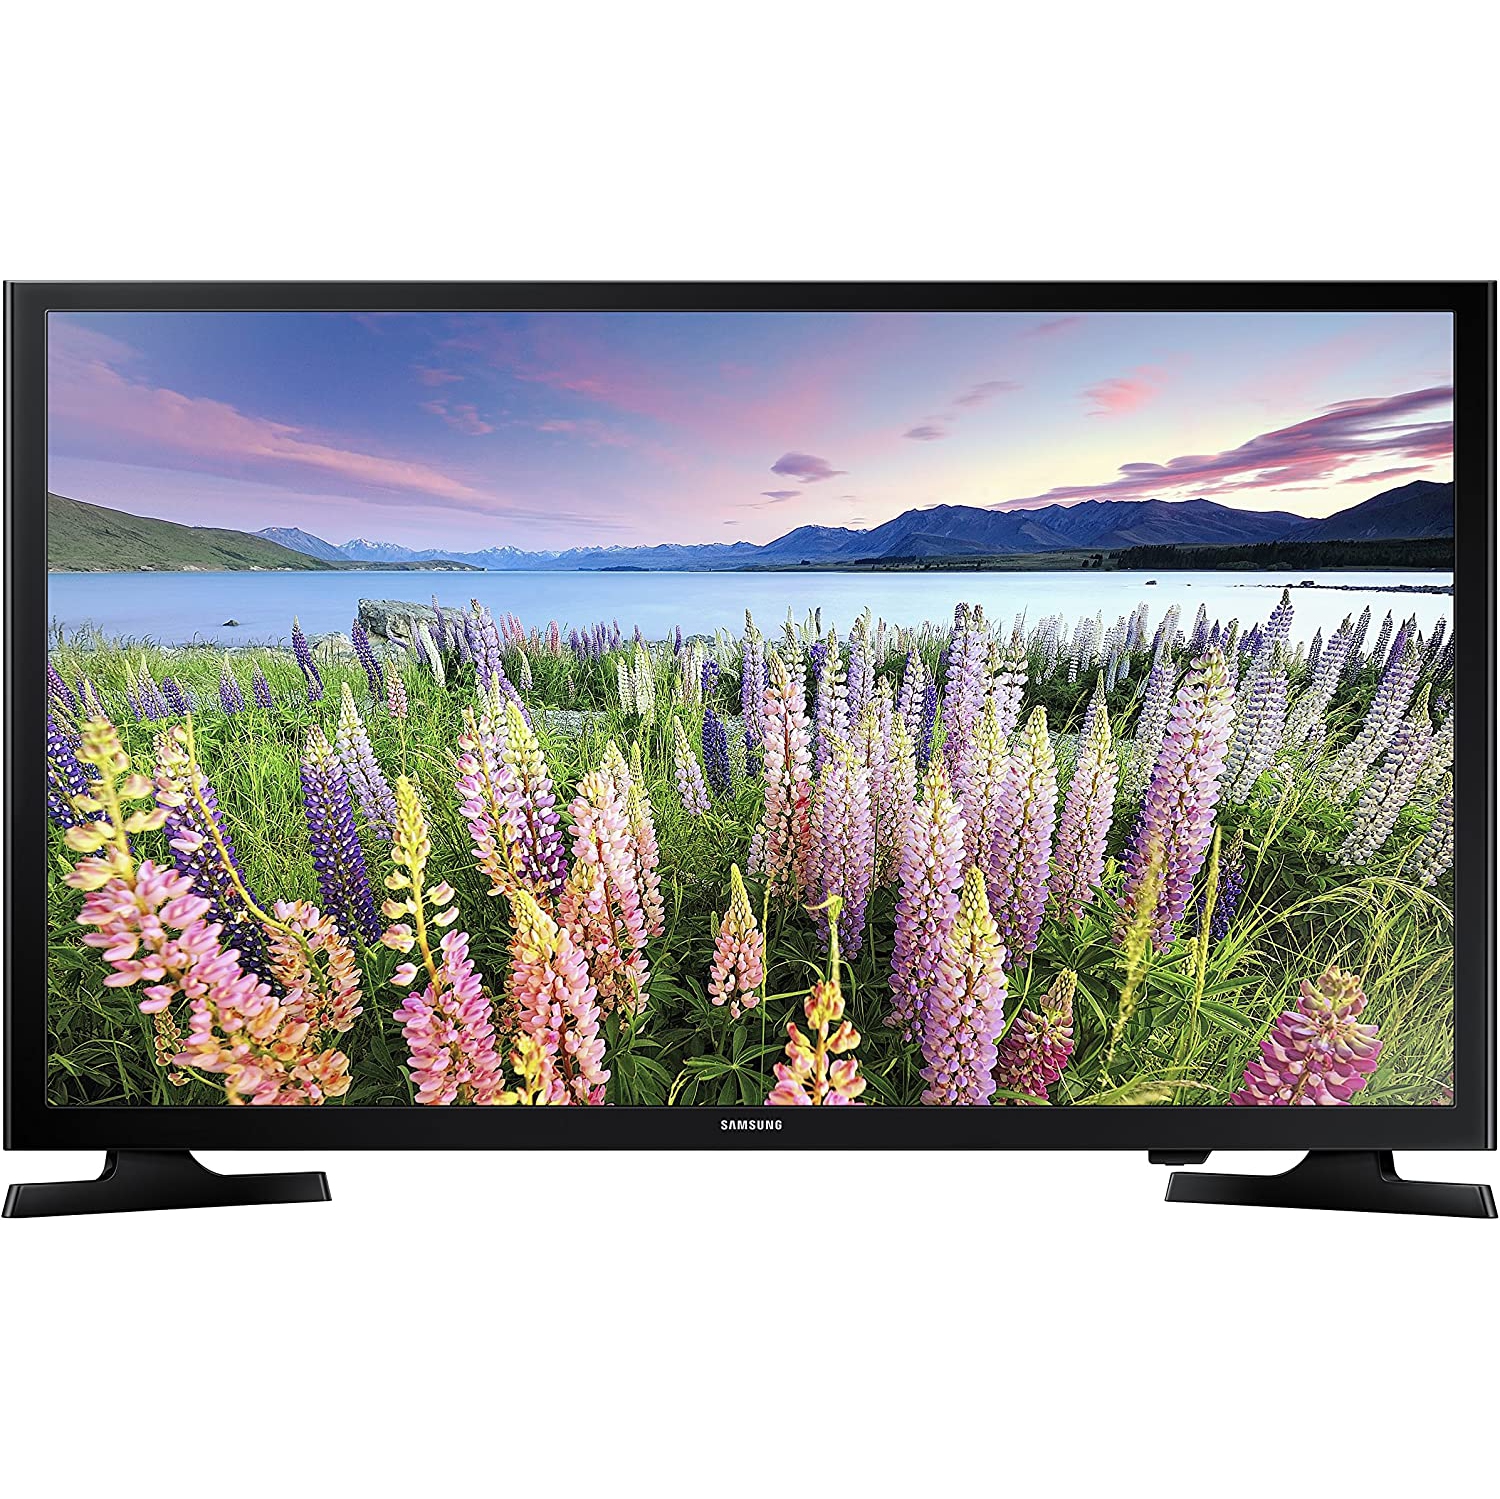 Samsung 40" 1080p LED Smart TV (Black) (UN40N5200AFXZC) - Open Box